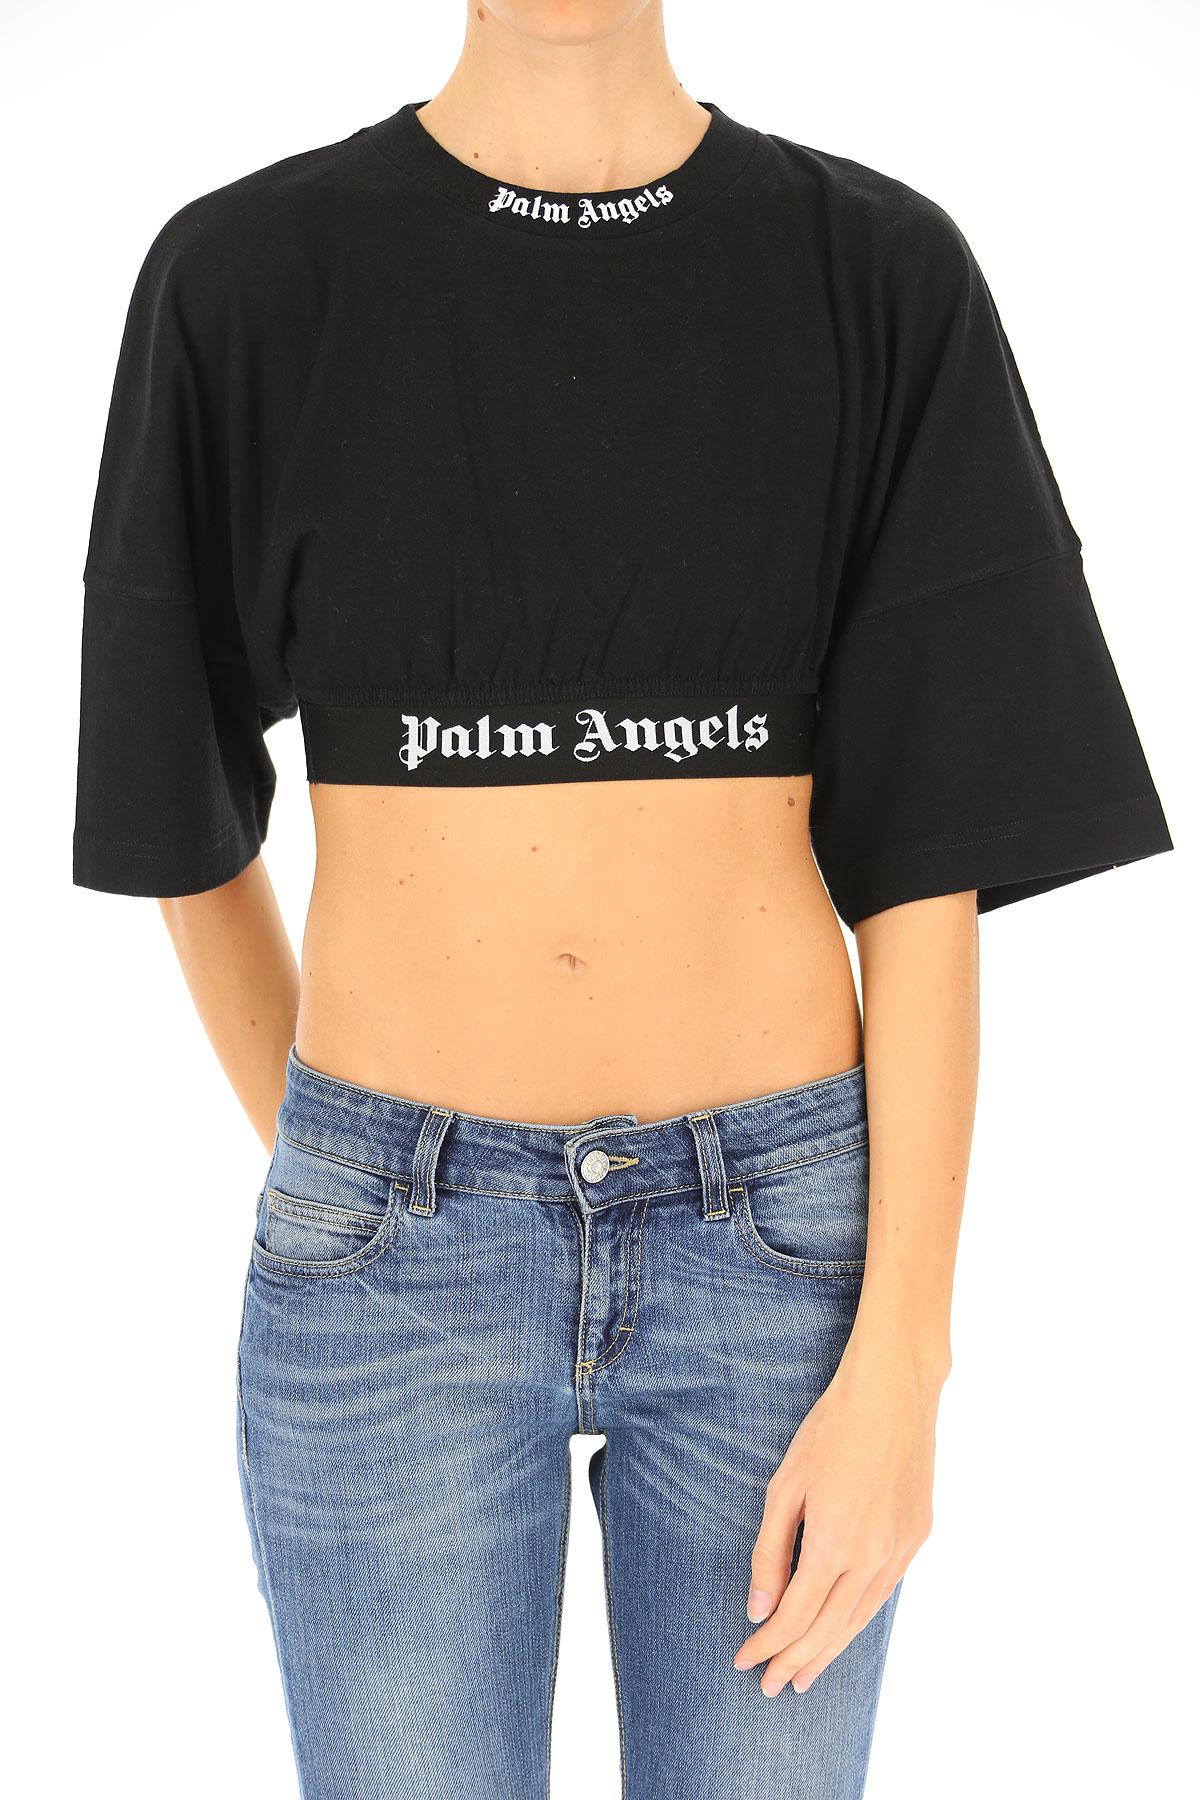 women's palm angels shirt